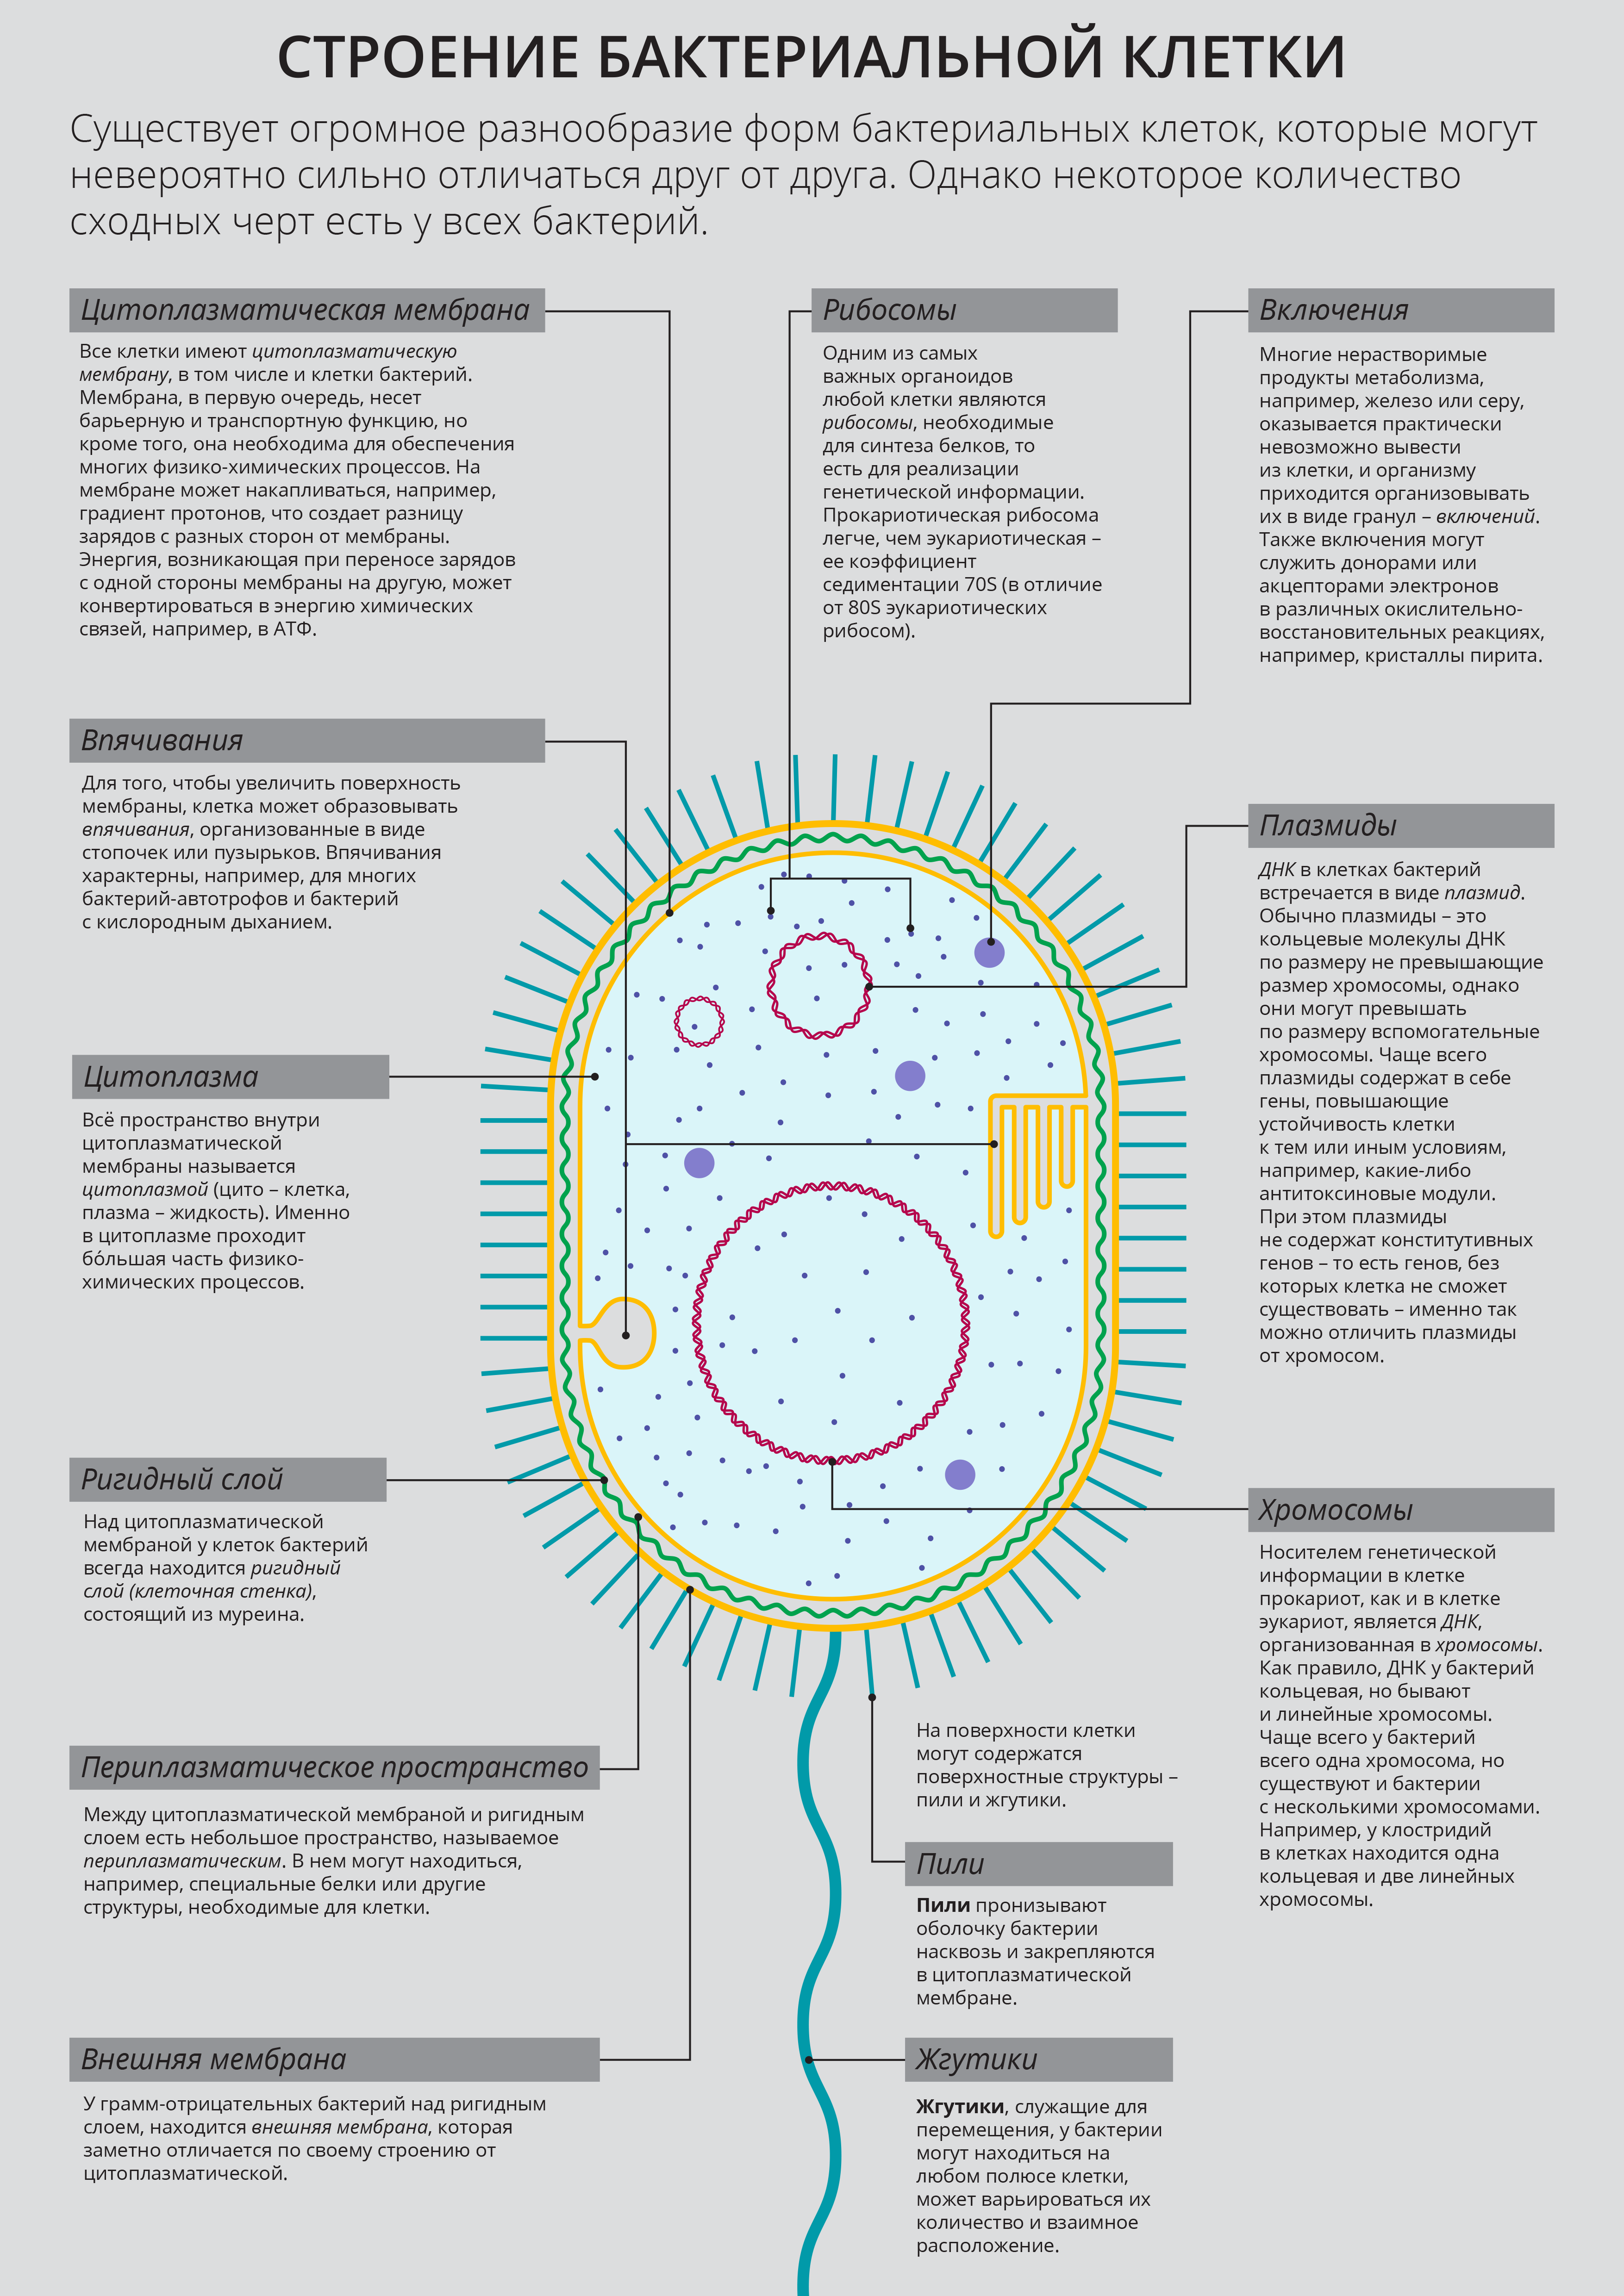 Структура бактериальной клетки микробиология таблица. Основные структурные компоненты бактериальной клетки. Структура бактериальной клетки таблица. Строение бактериальной клетки микробиология и их функции. Бактерия строение функции